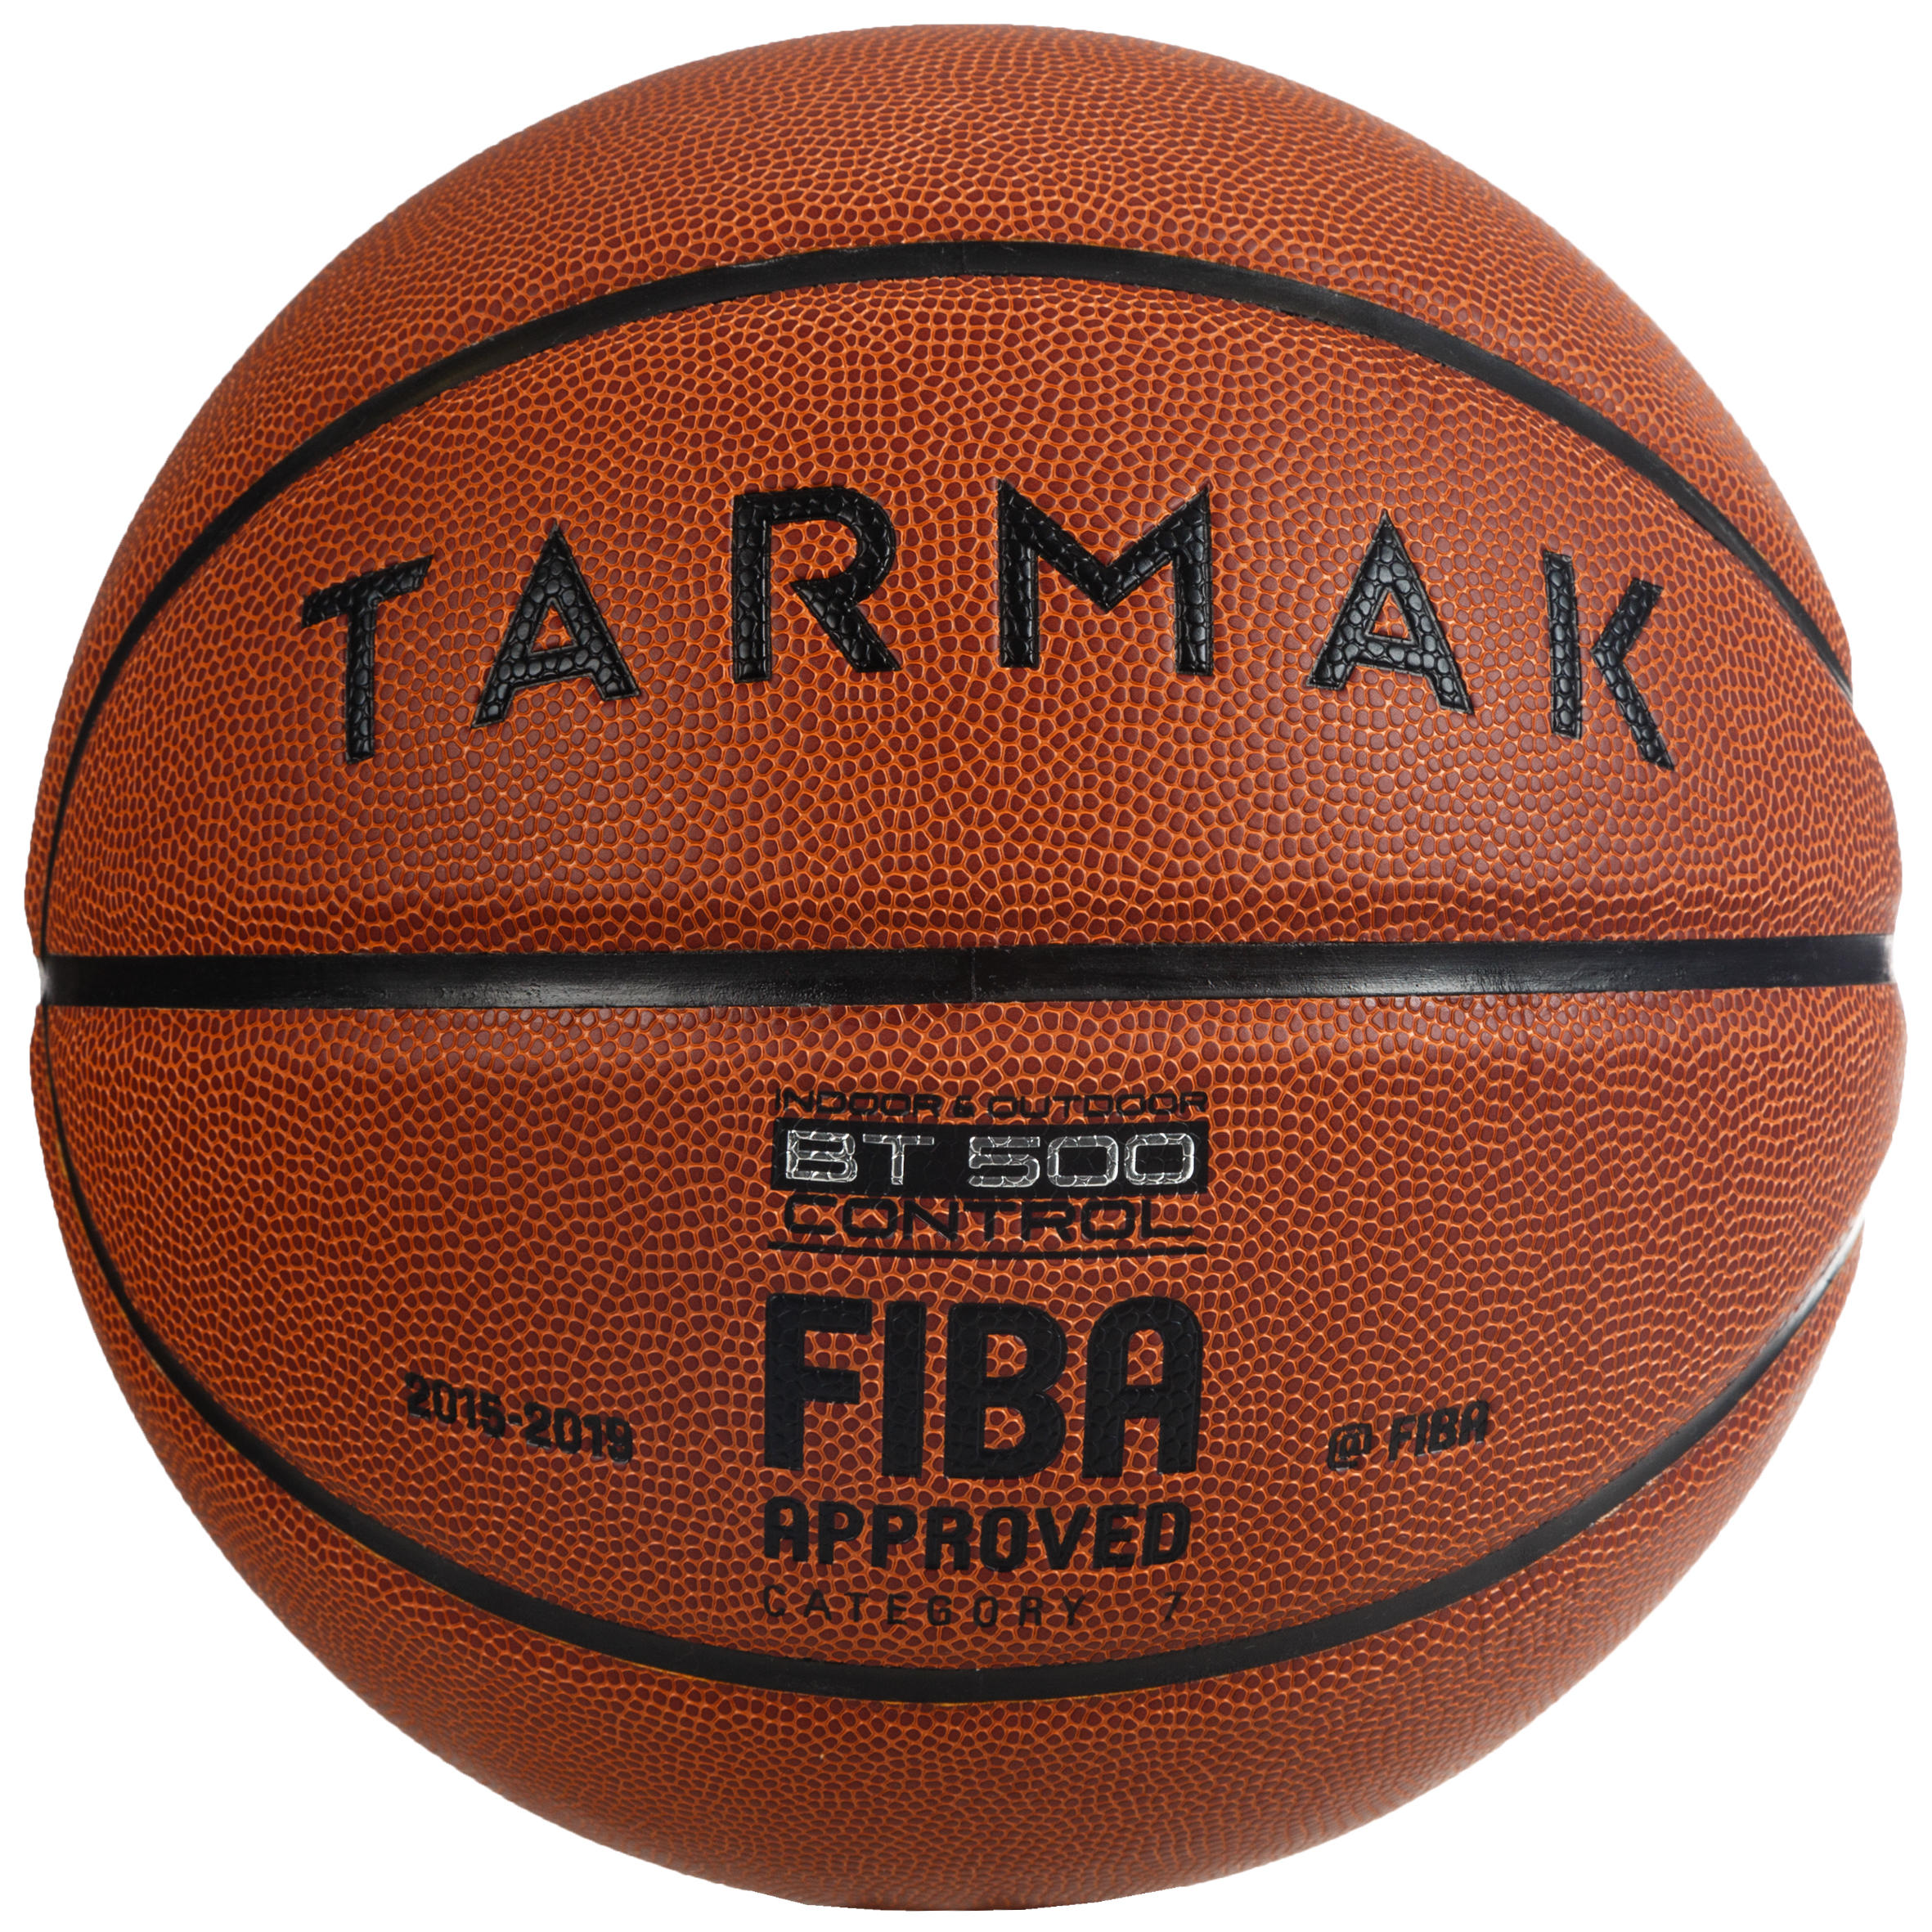 [ส่งฟรี ] ลูกบาสเกตบอล? รุ่น BT500 FIBA เบอร์ 7 (สีน้ำตาล) มาตราฐาน FIBA สำหรับผู้ใหญ่ Basketball Ball ? Boys'/Men's Size 7 (from 13 Years) Basketball BT500 - Brown/Fiba. ลูกบาสเกตบอล 6 7